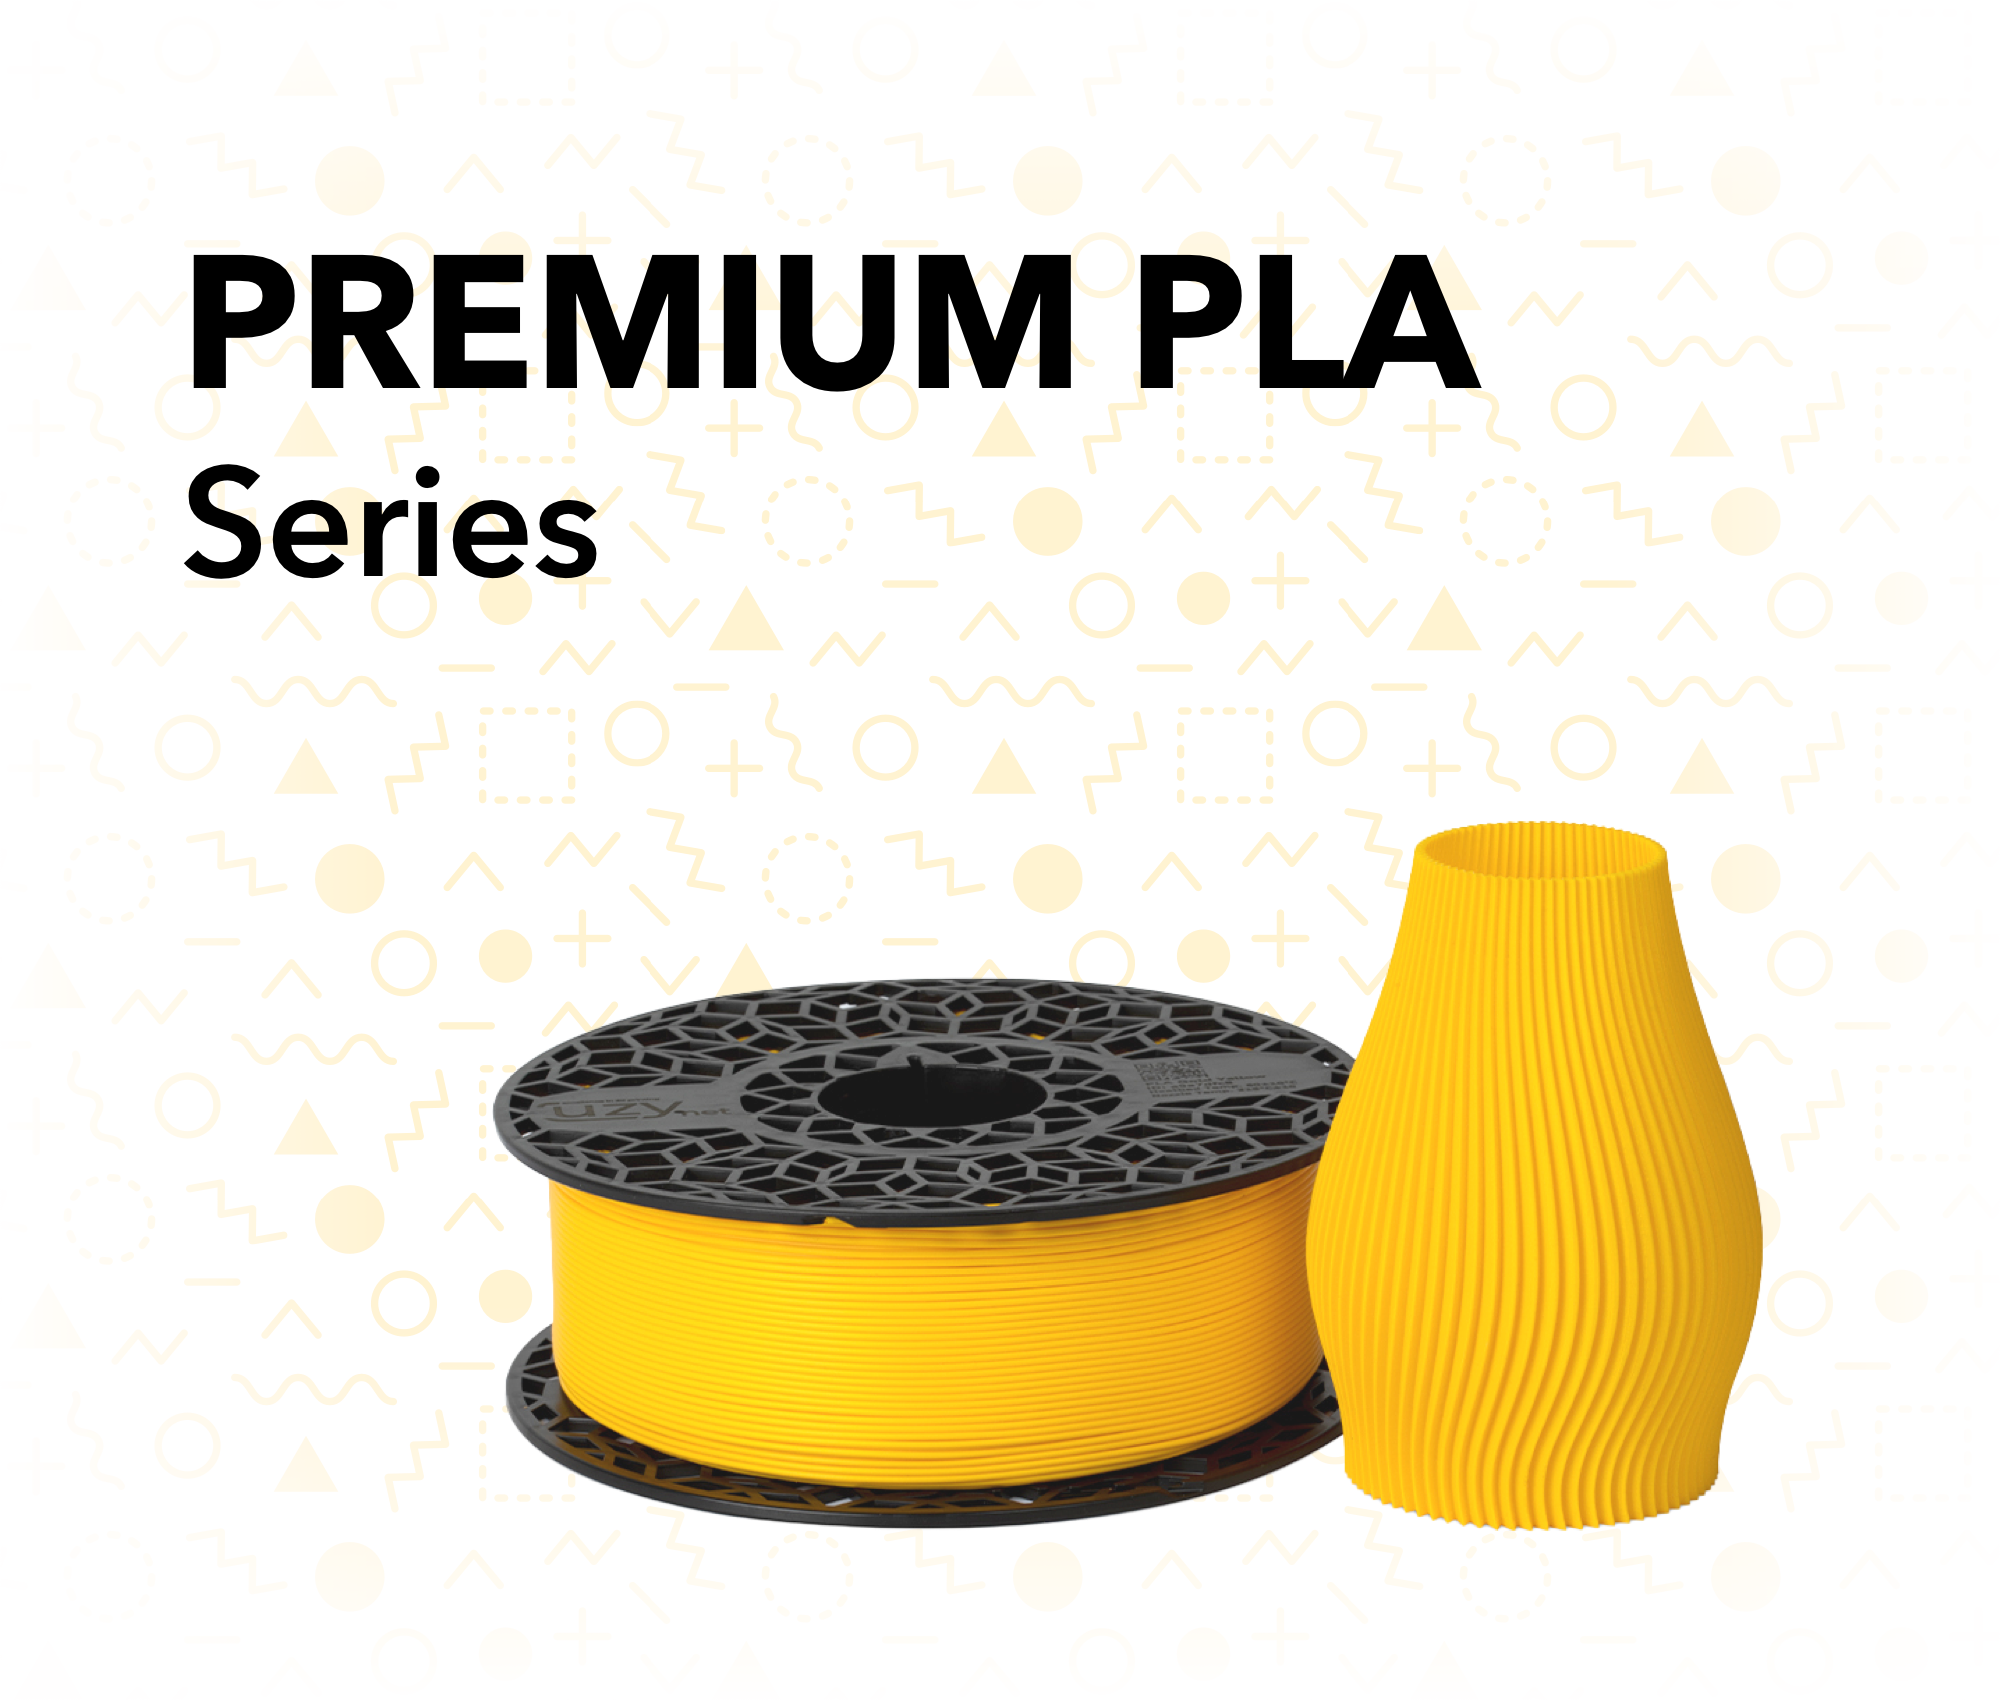 Premium PLA Series